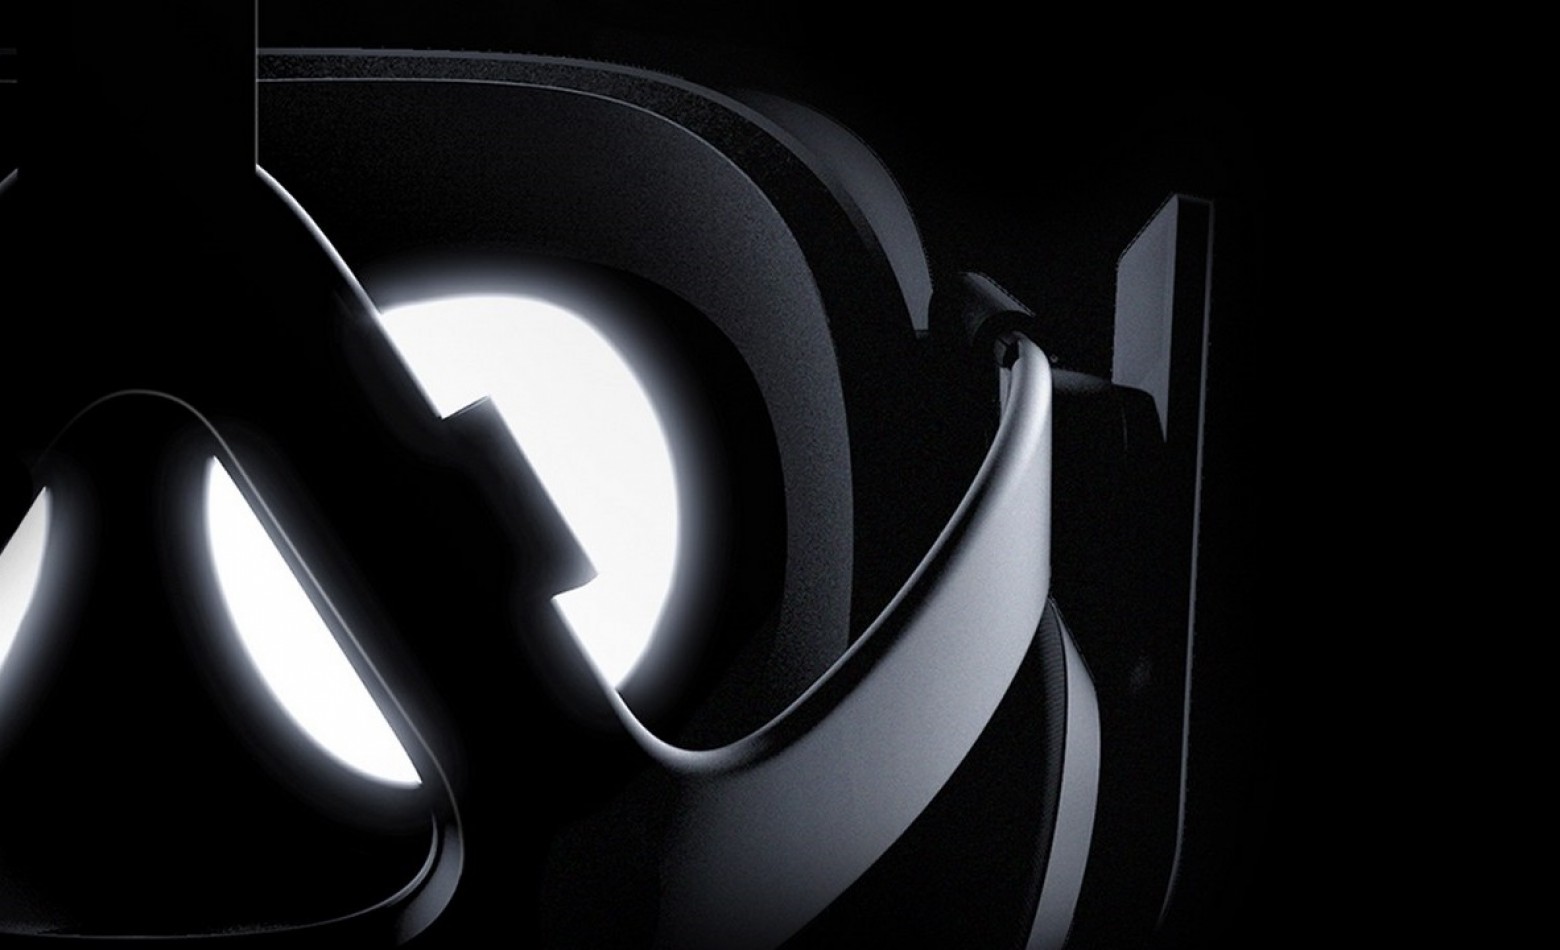 Aquecimento E3: Oculus traz novidades em conferência ao vivo [ATUALIZADO]